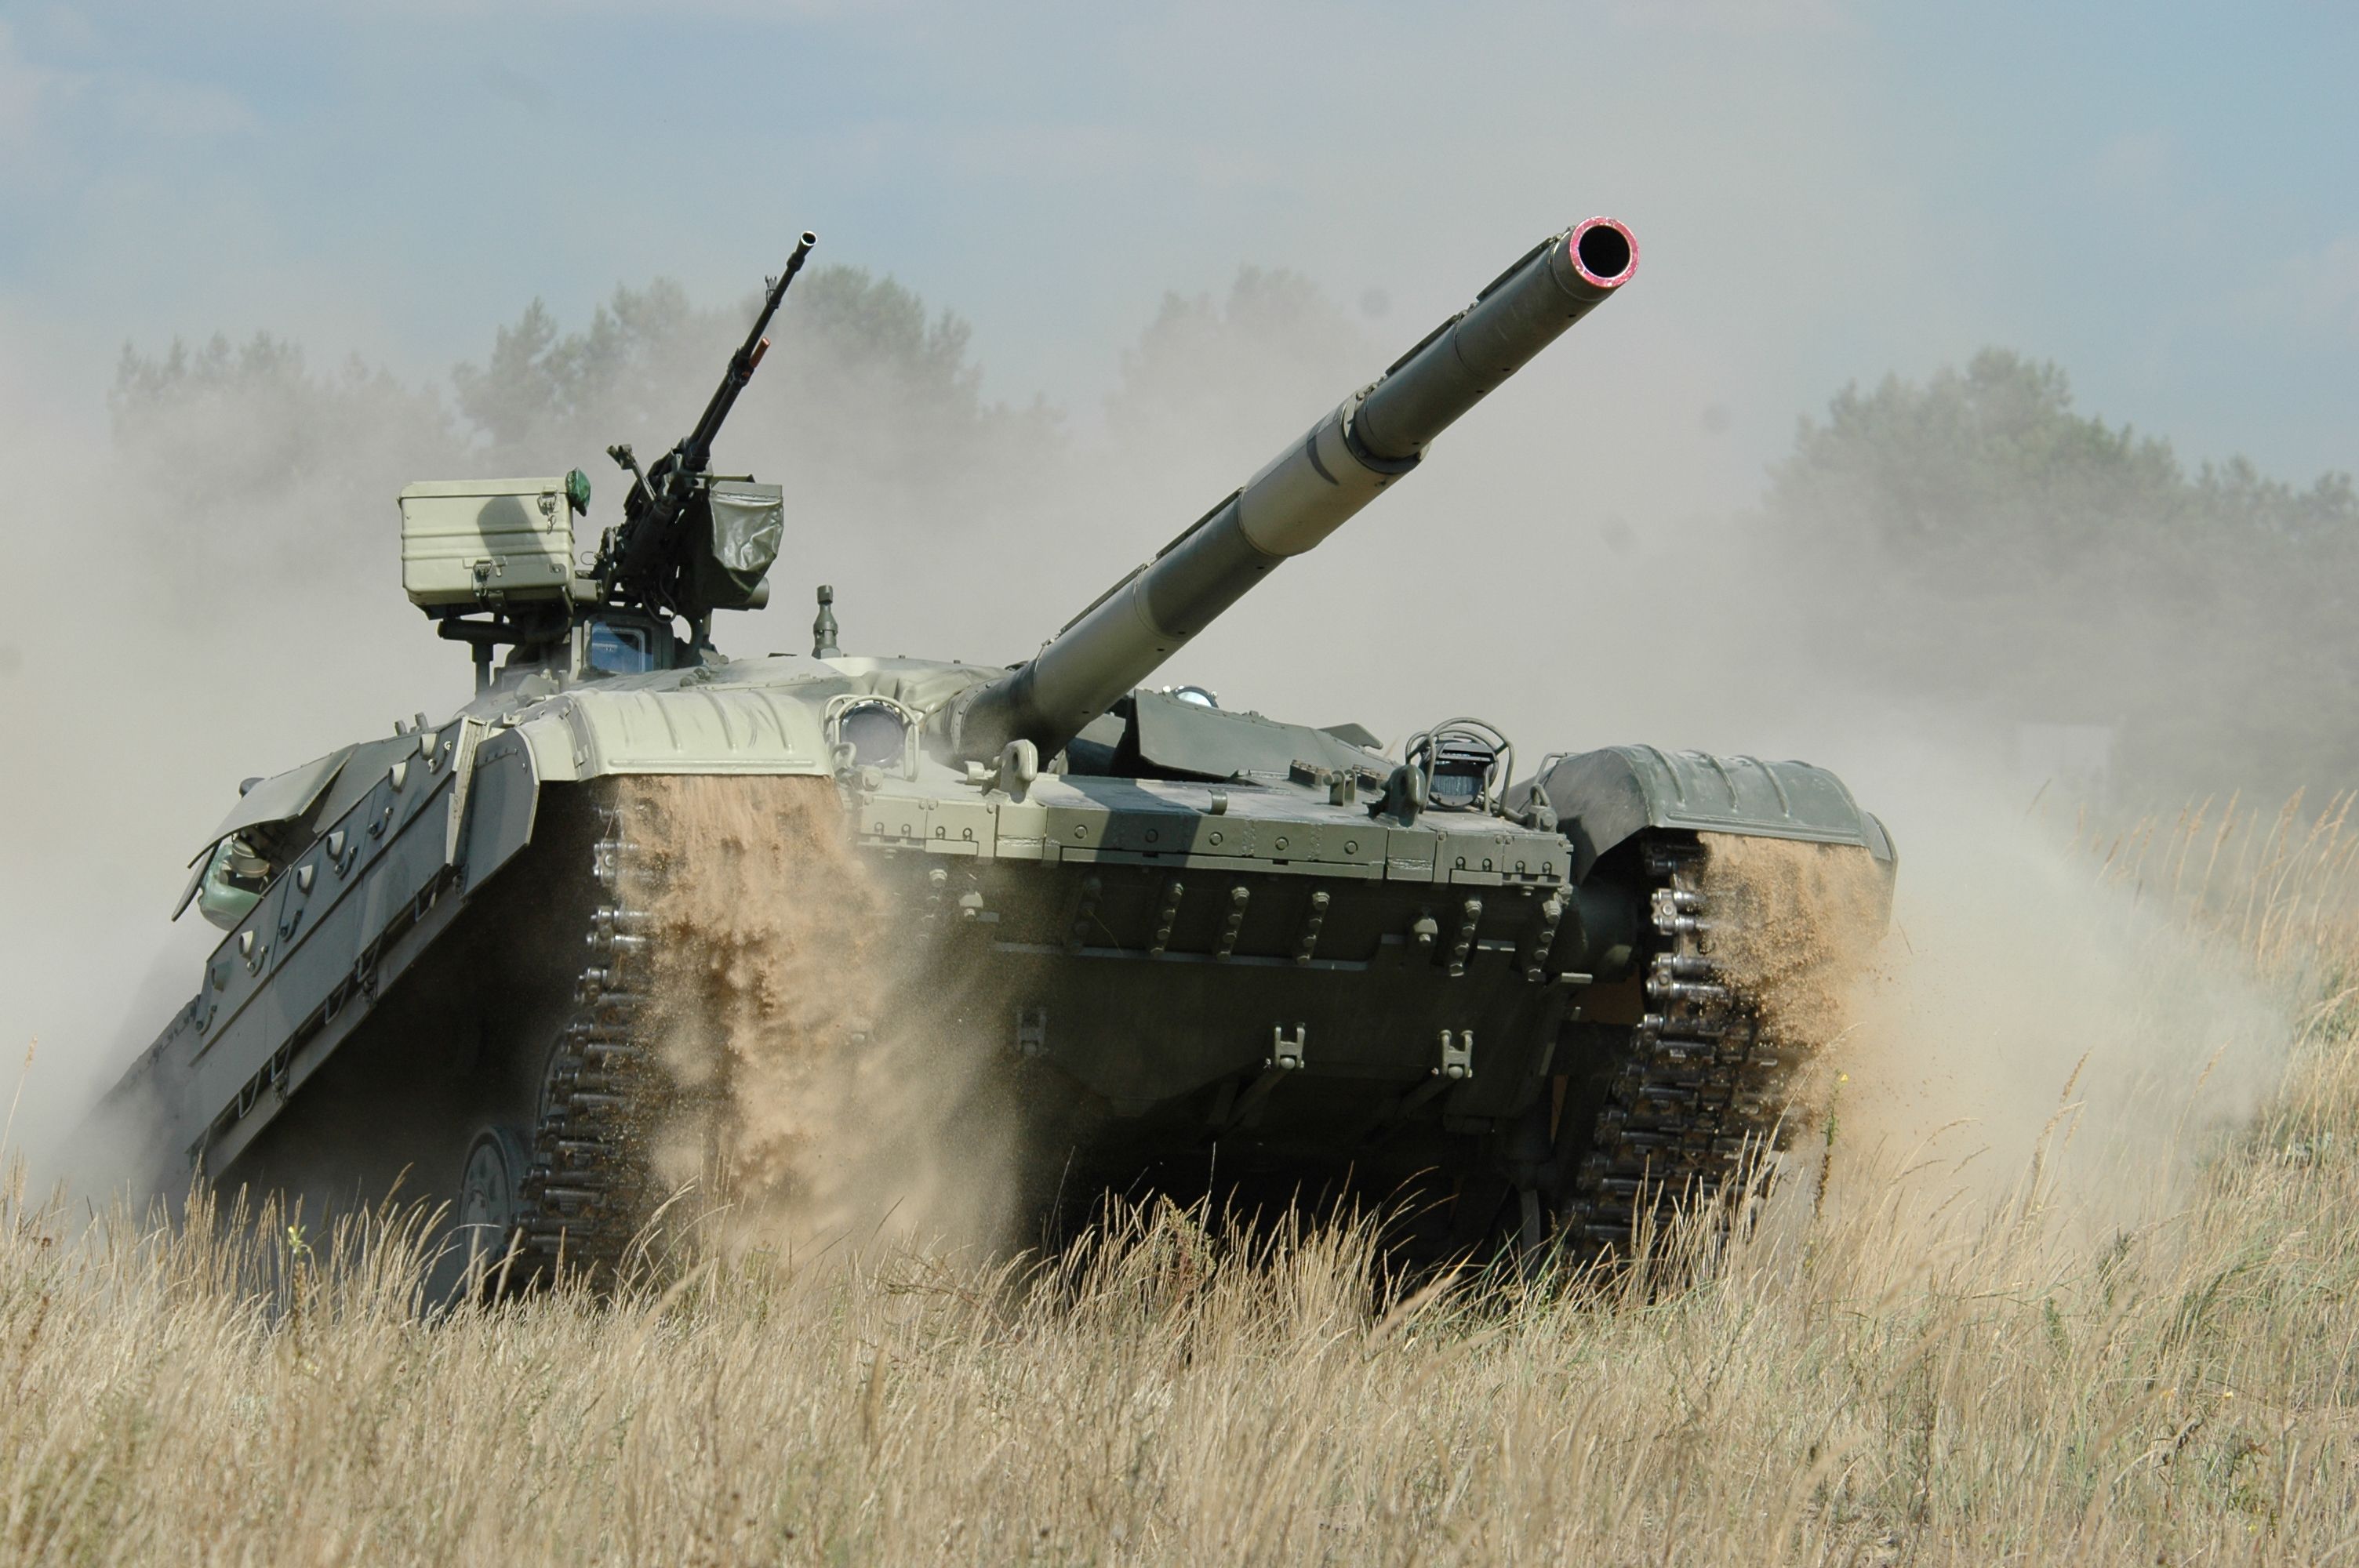 "Укрощение зверя": в Сети опубликовано яркое видео испытаний новой версии украинского танка БМ "Оплот" - боевую машину ускоренно готовят под крупный военный контракт для армии Пакистана (кадры)